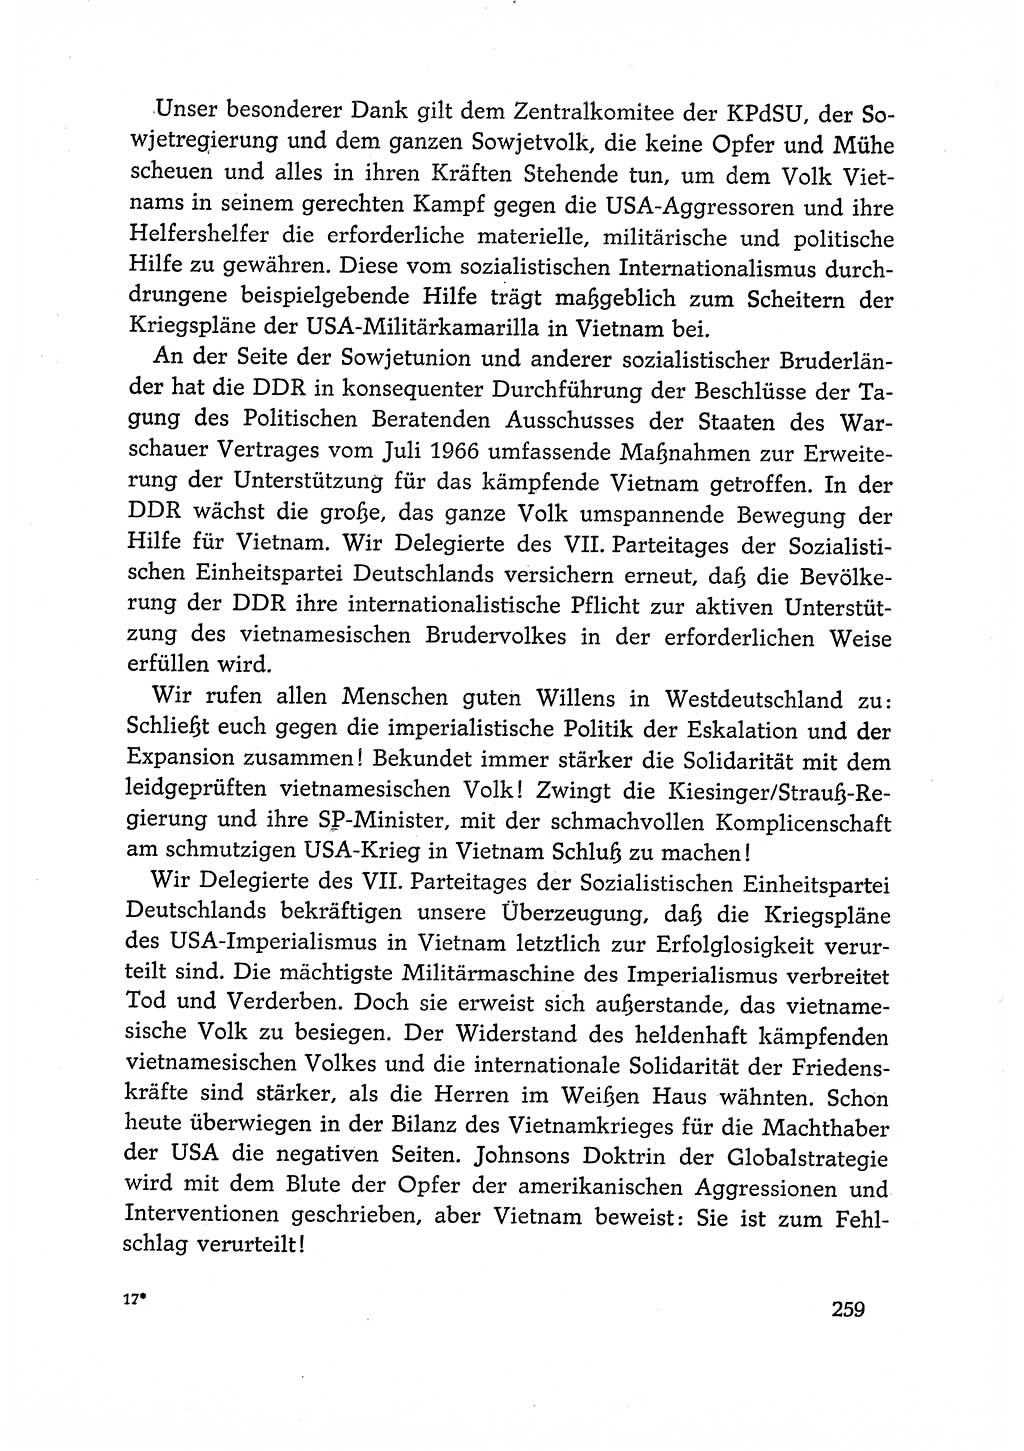 Dokumente der Sozialistischen Einheitspartei Deutschlands (SED) [Deutsche Demokratische Republik (DDR)] 1966-1967, Seite 259 (Dok. SED DDR 1966-1967, S. 259)